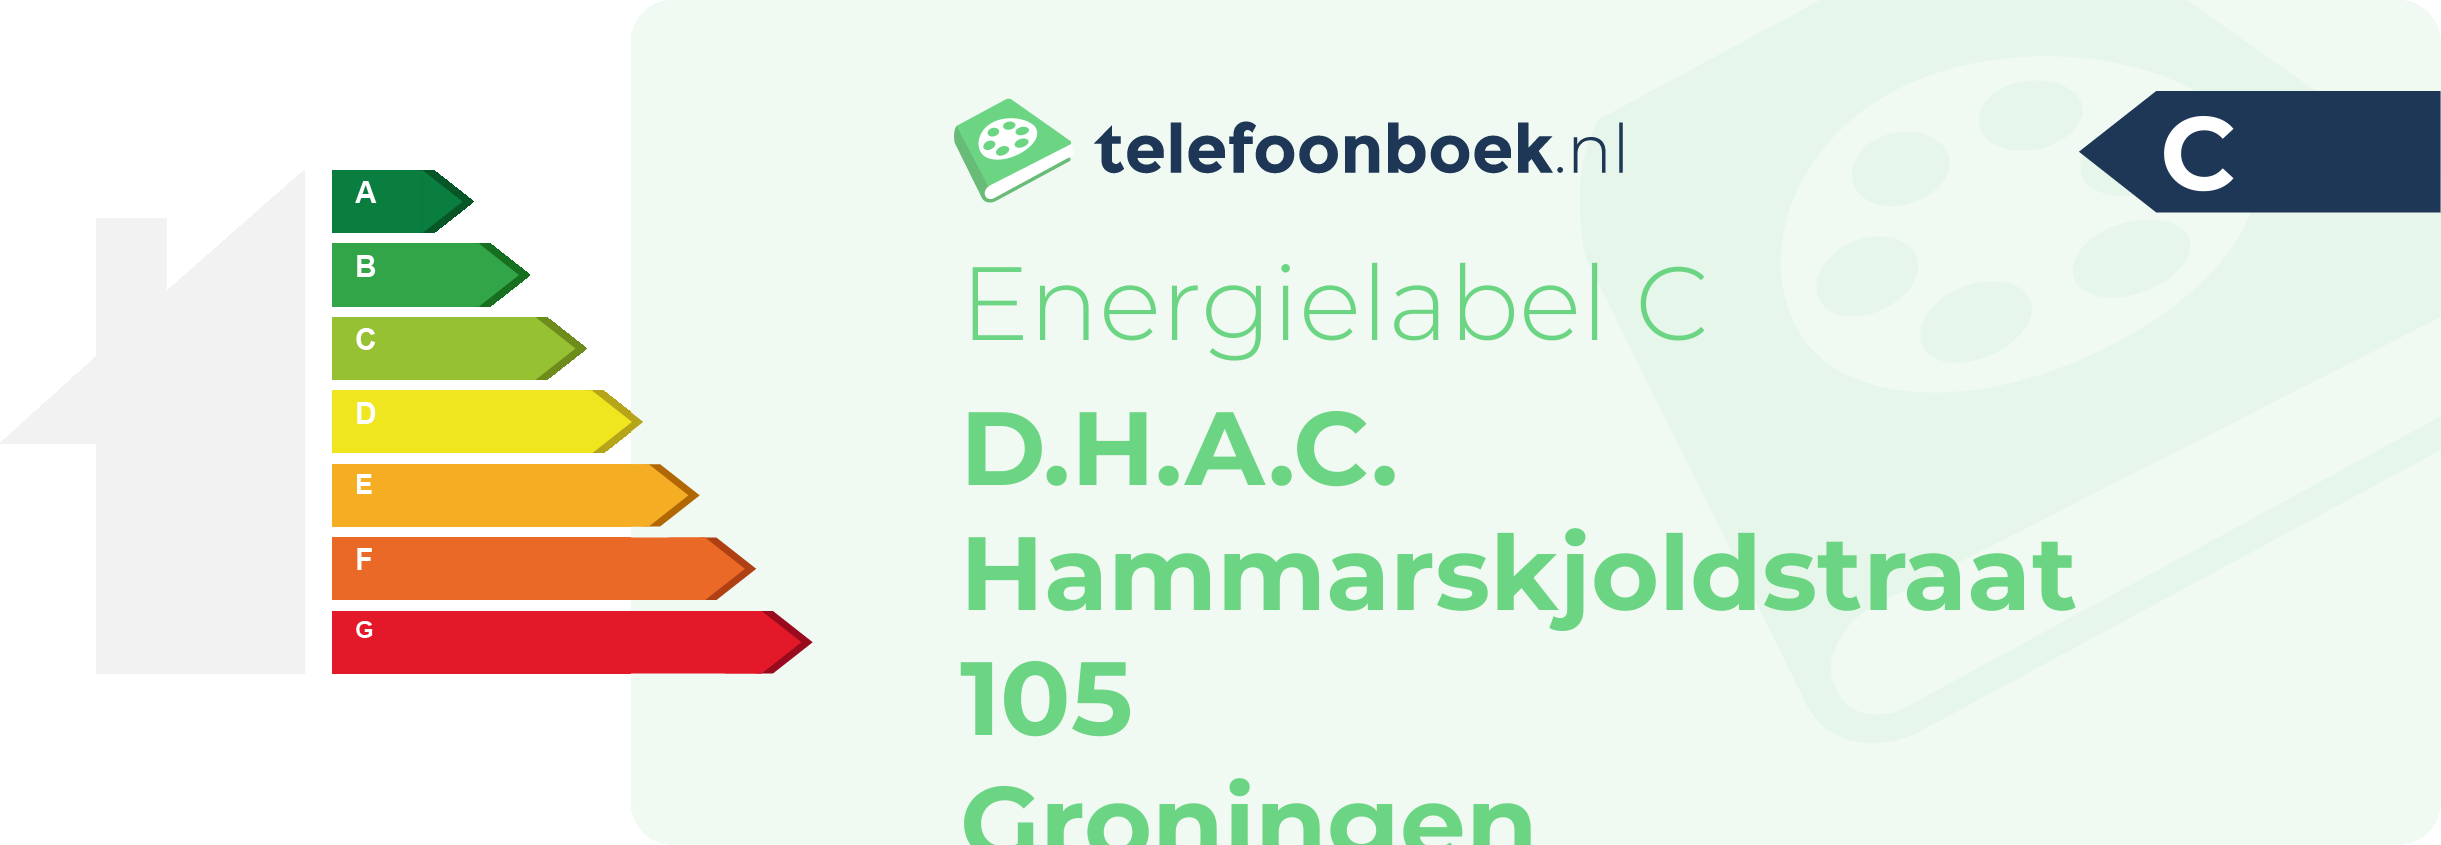 Energielabel D.H.A.C. Hammarskjoldstraat 105 Groningen